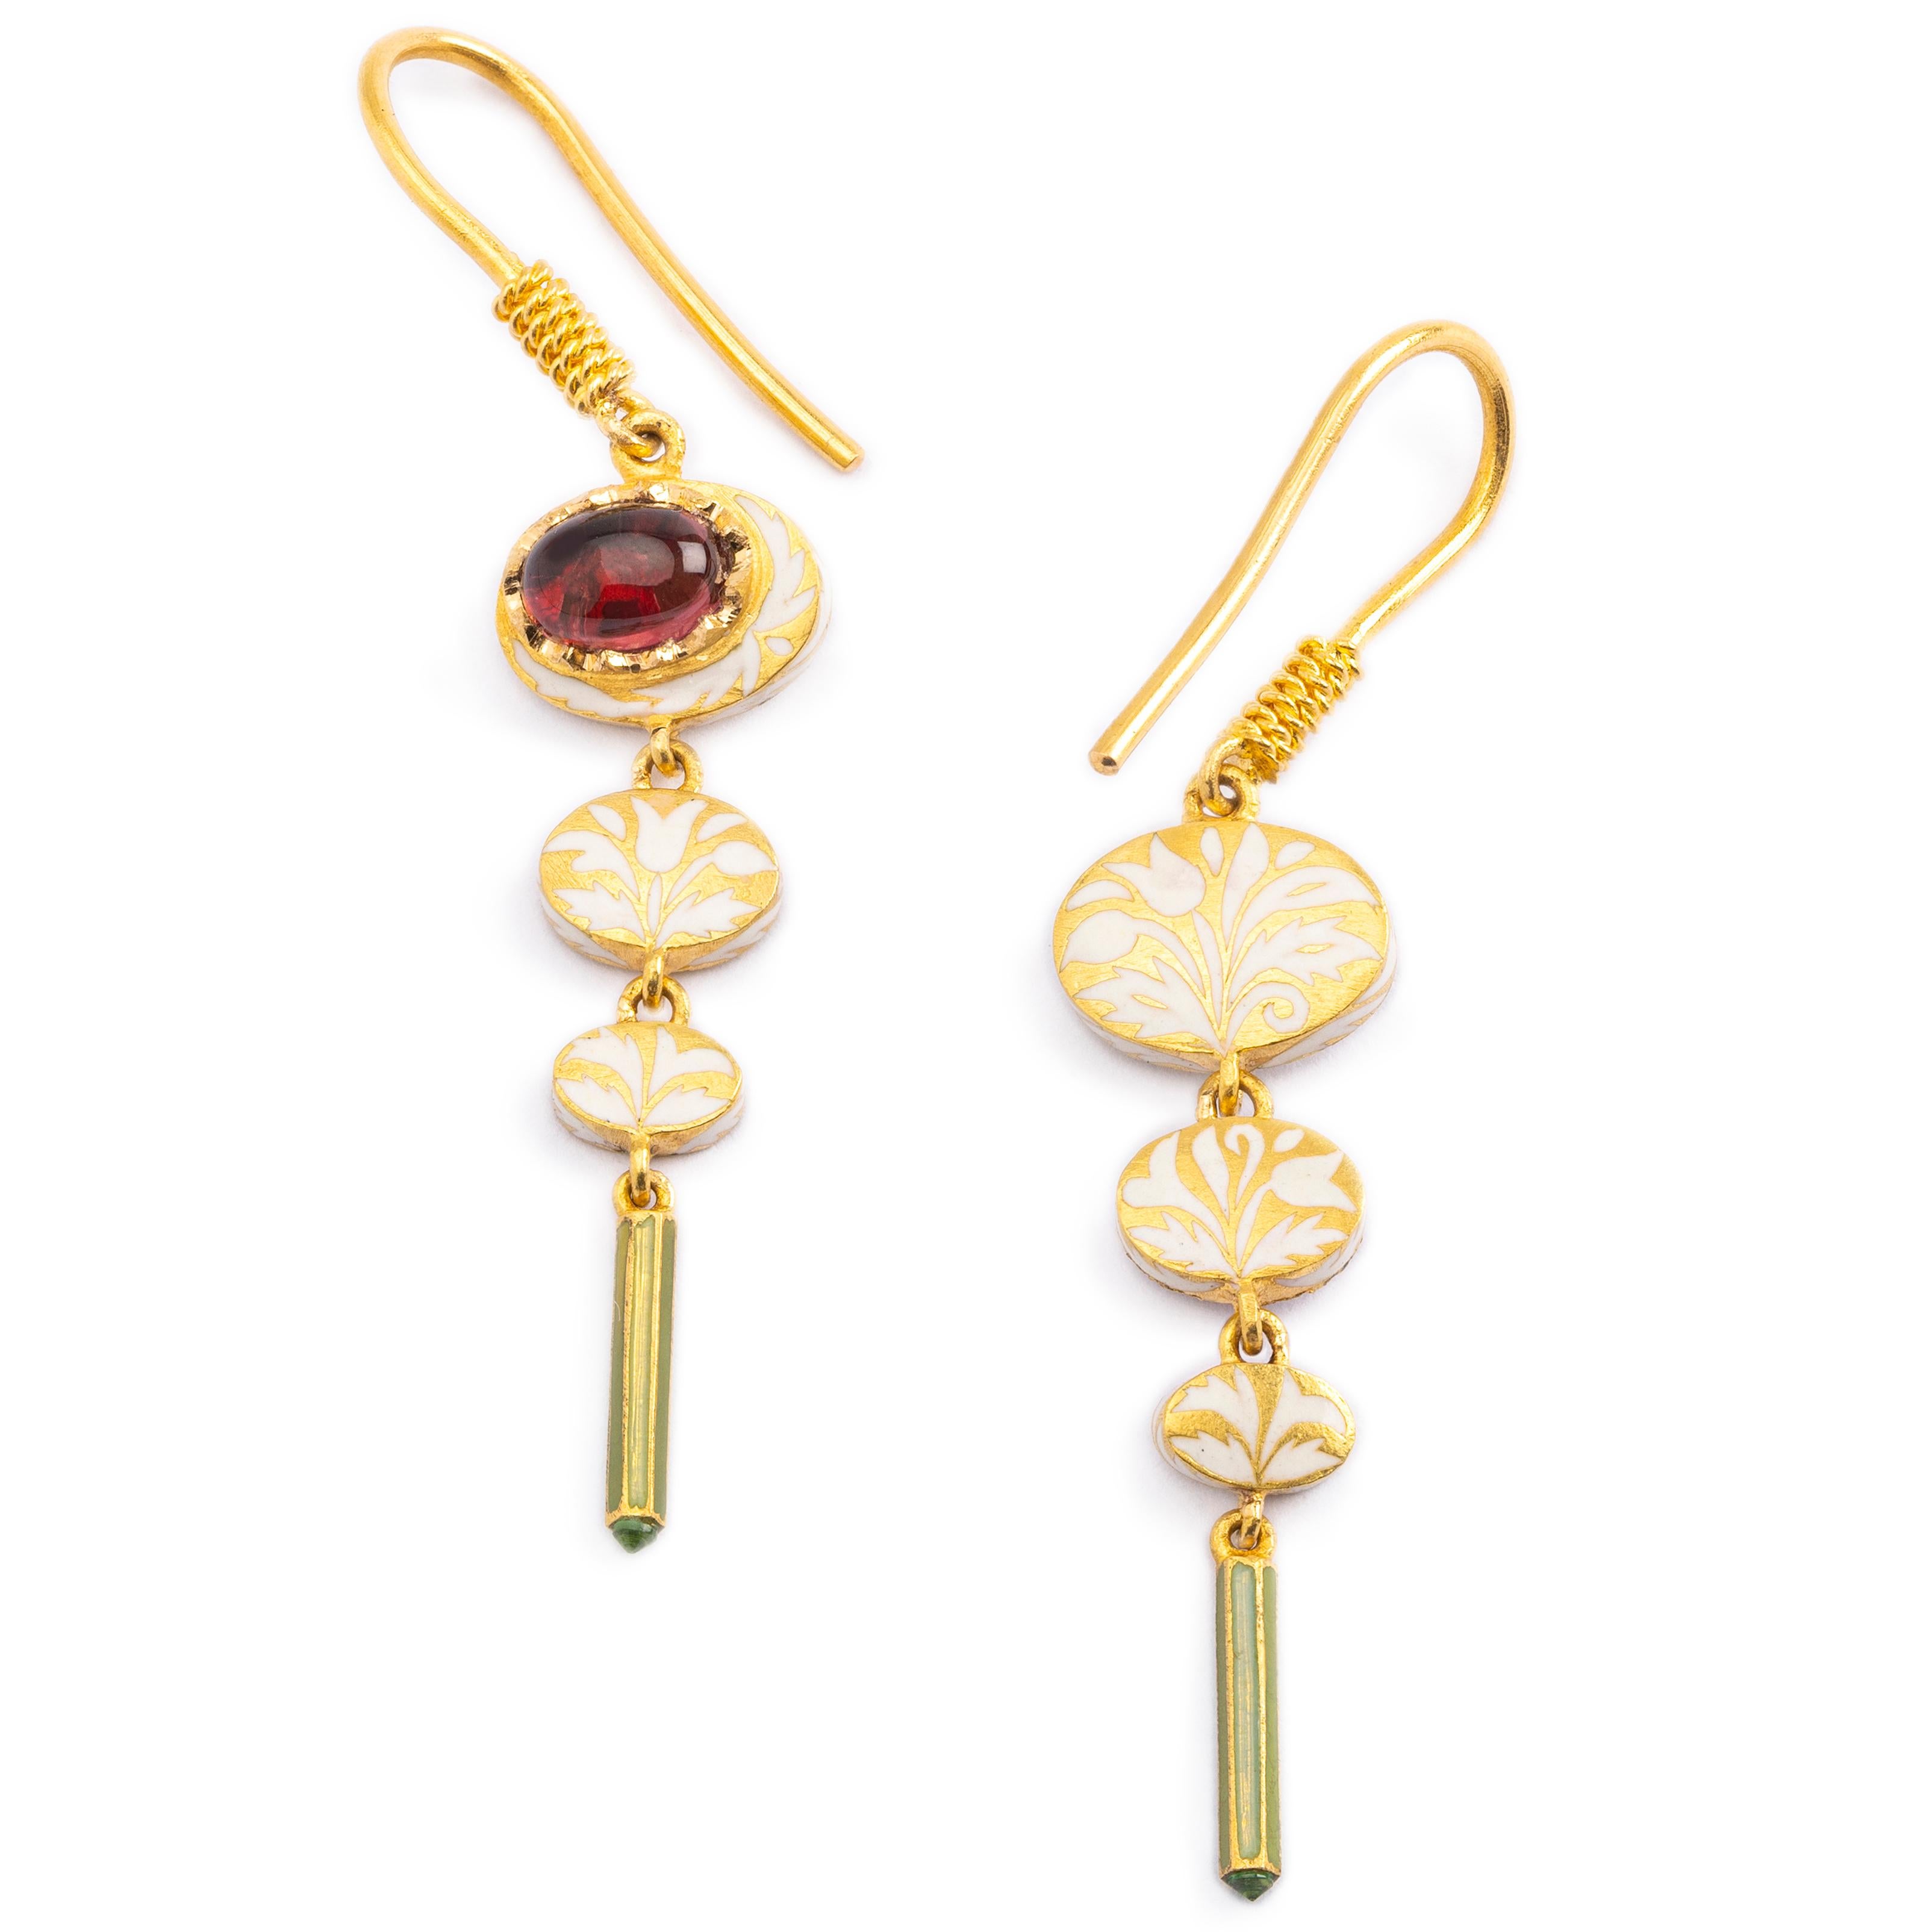 Ces magnifiques boucles d'oreilles pendantes sont issues de la collection Nizam d'Agaro Jewell. Tous les bijoux Agaro sont entièrement gravés et émaillés à la main avec de l'émail de verre cuit à chaud, selon un art ancien de fabrication de bijoux